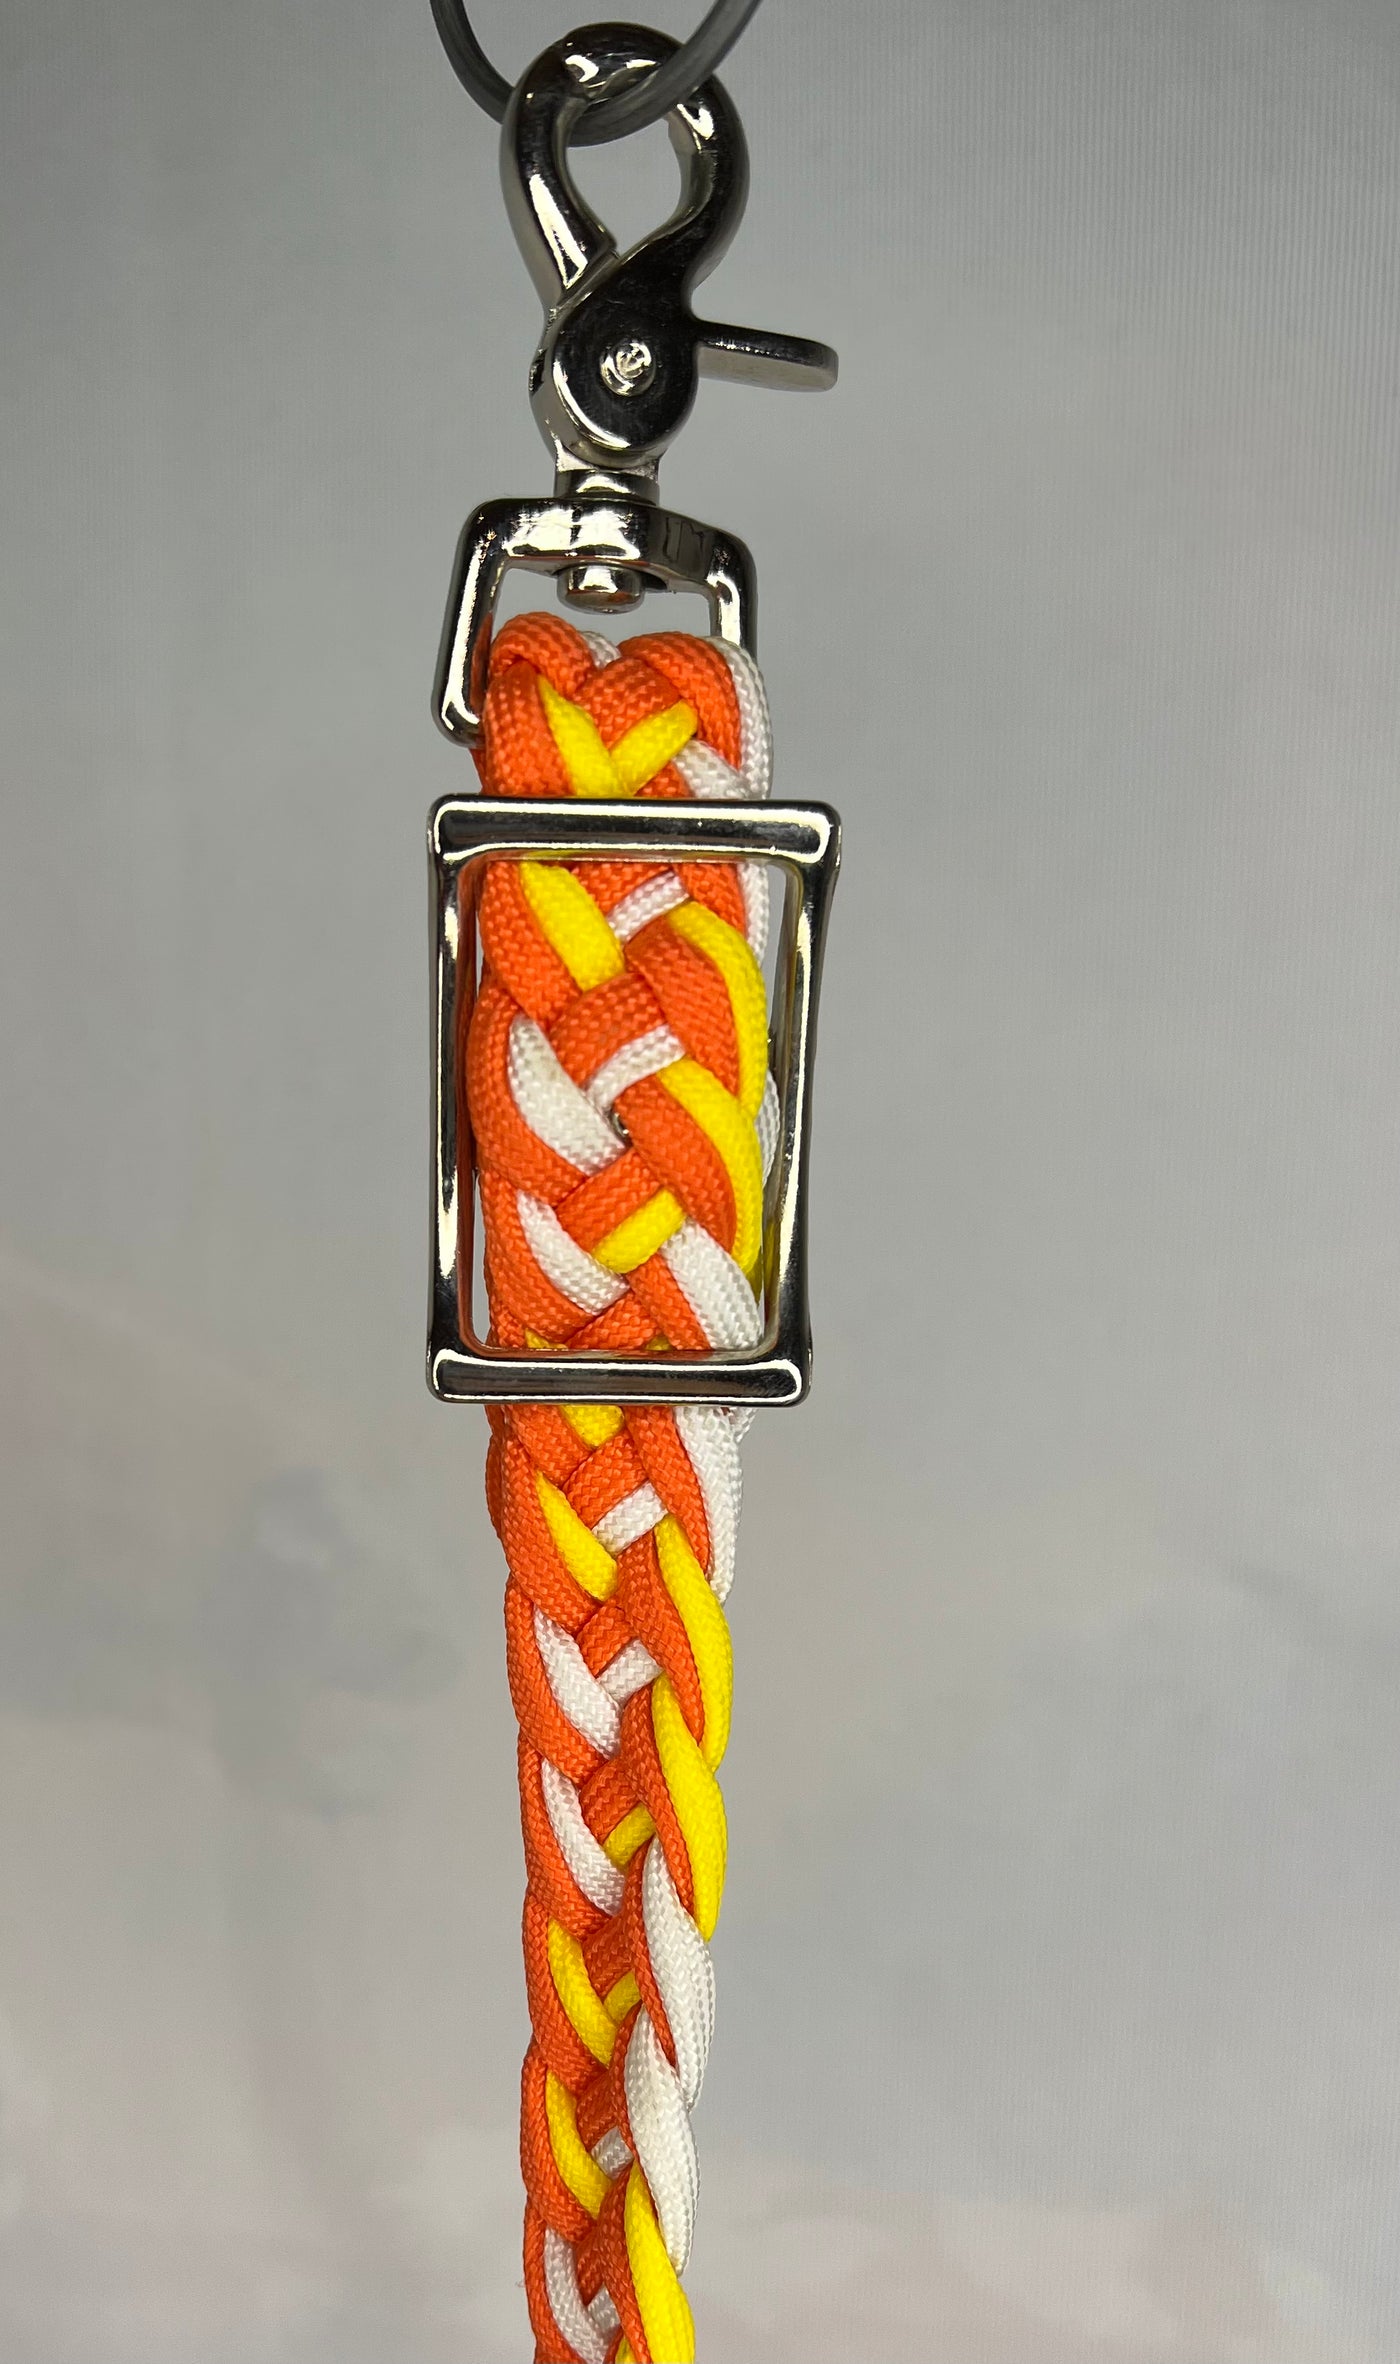 Wither strap white/orange/yellow 72-253